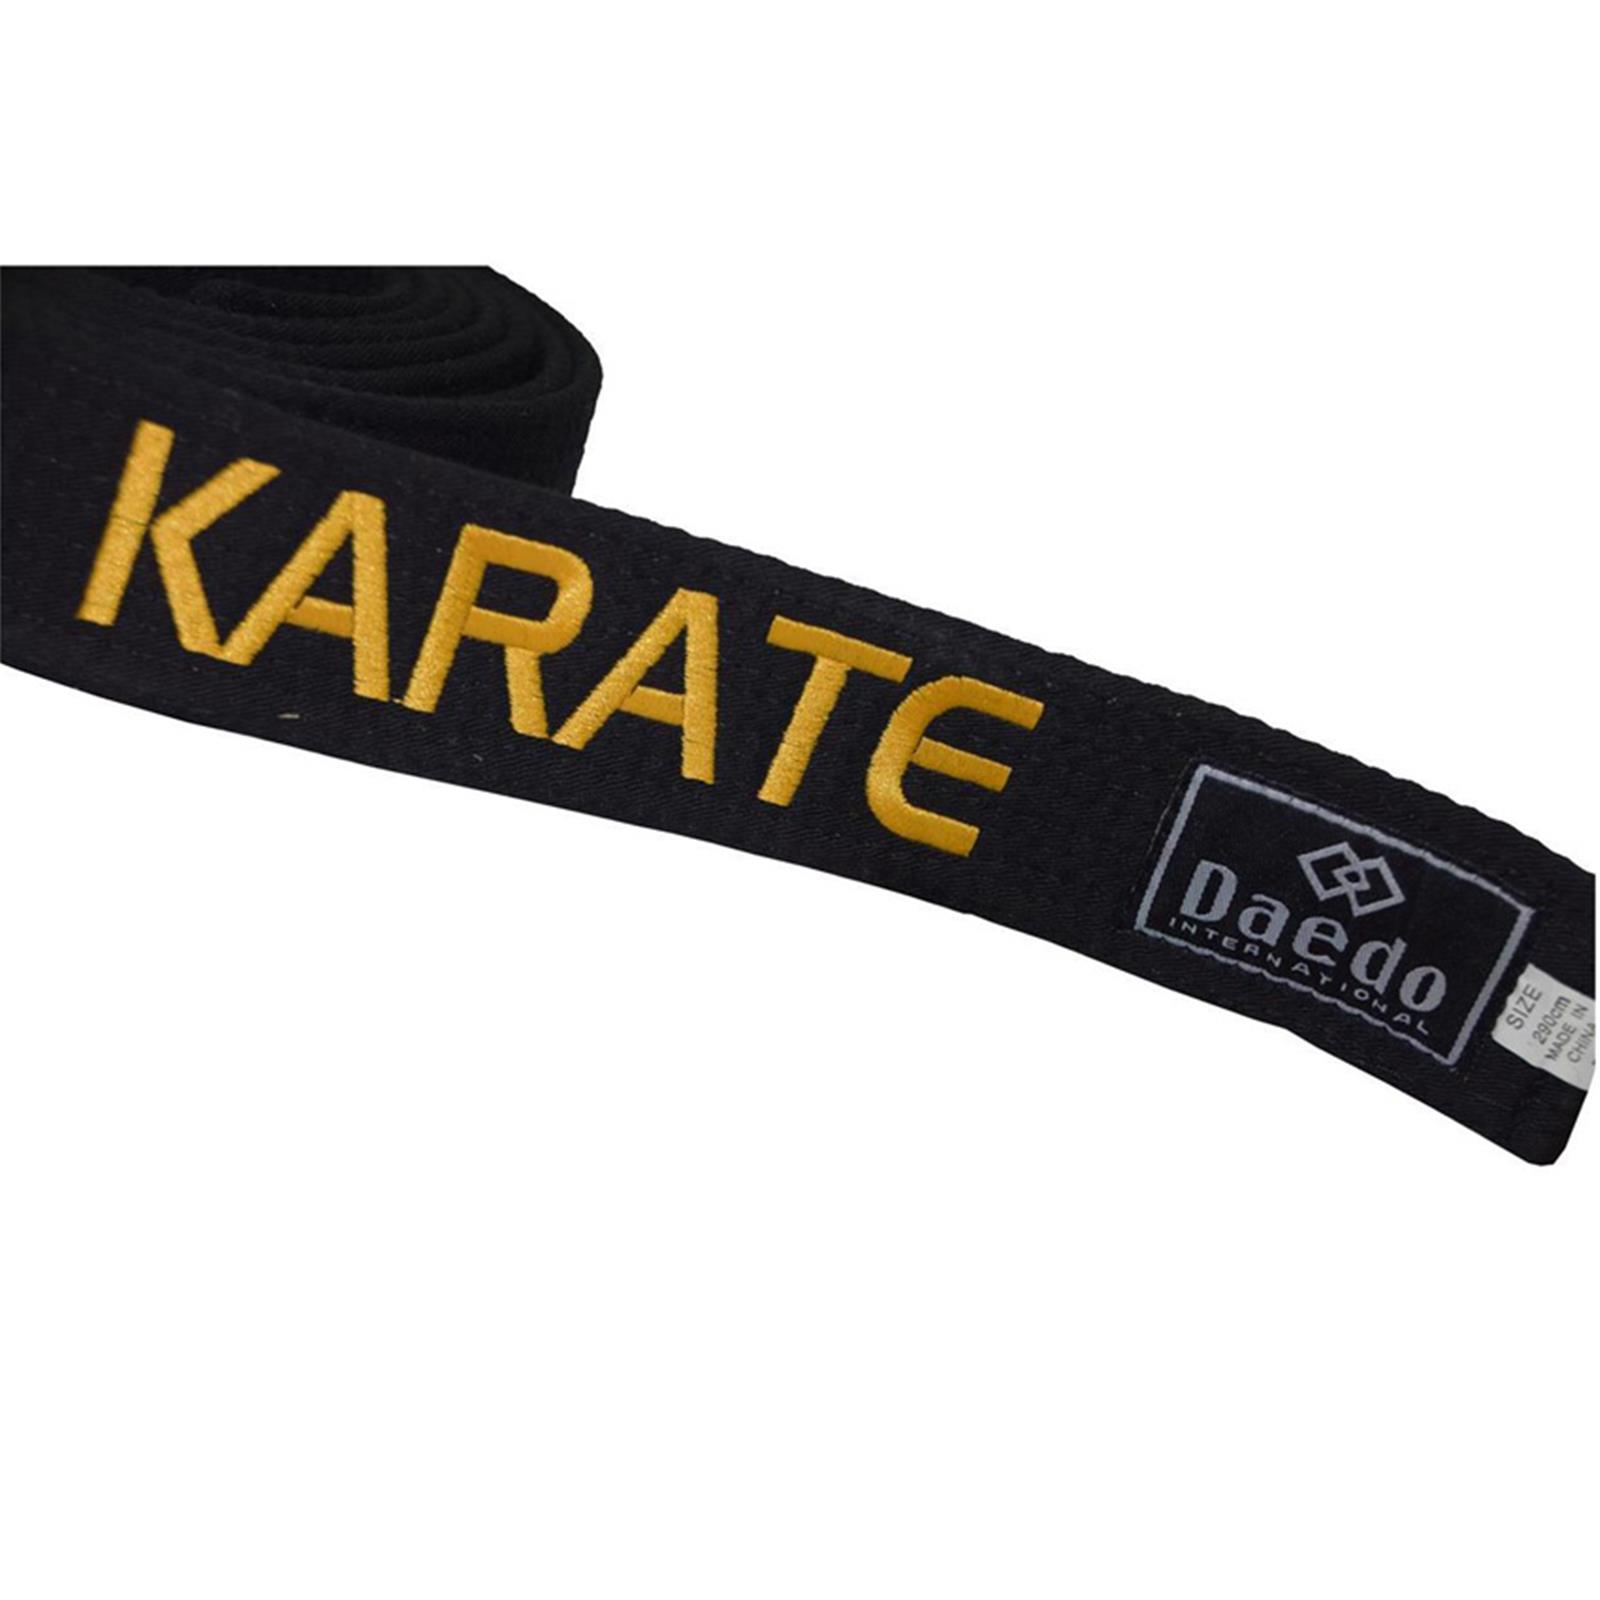 Dae Do Cintura Nera Karate ricamata Oro personalizzata (ALTEZZA 4,5 CM - Tag. 7°  CM 315)